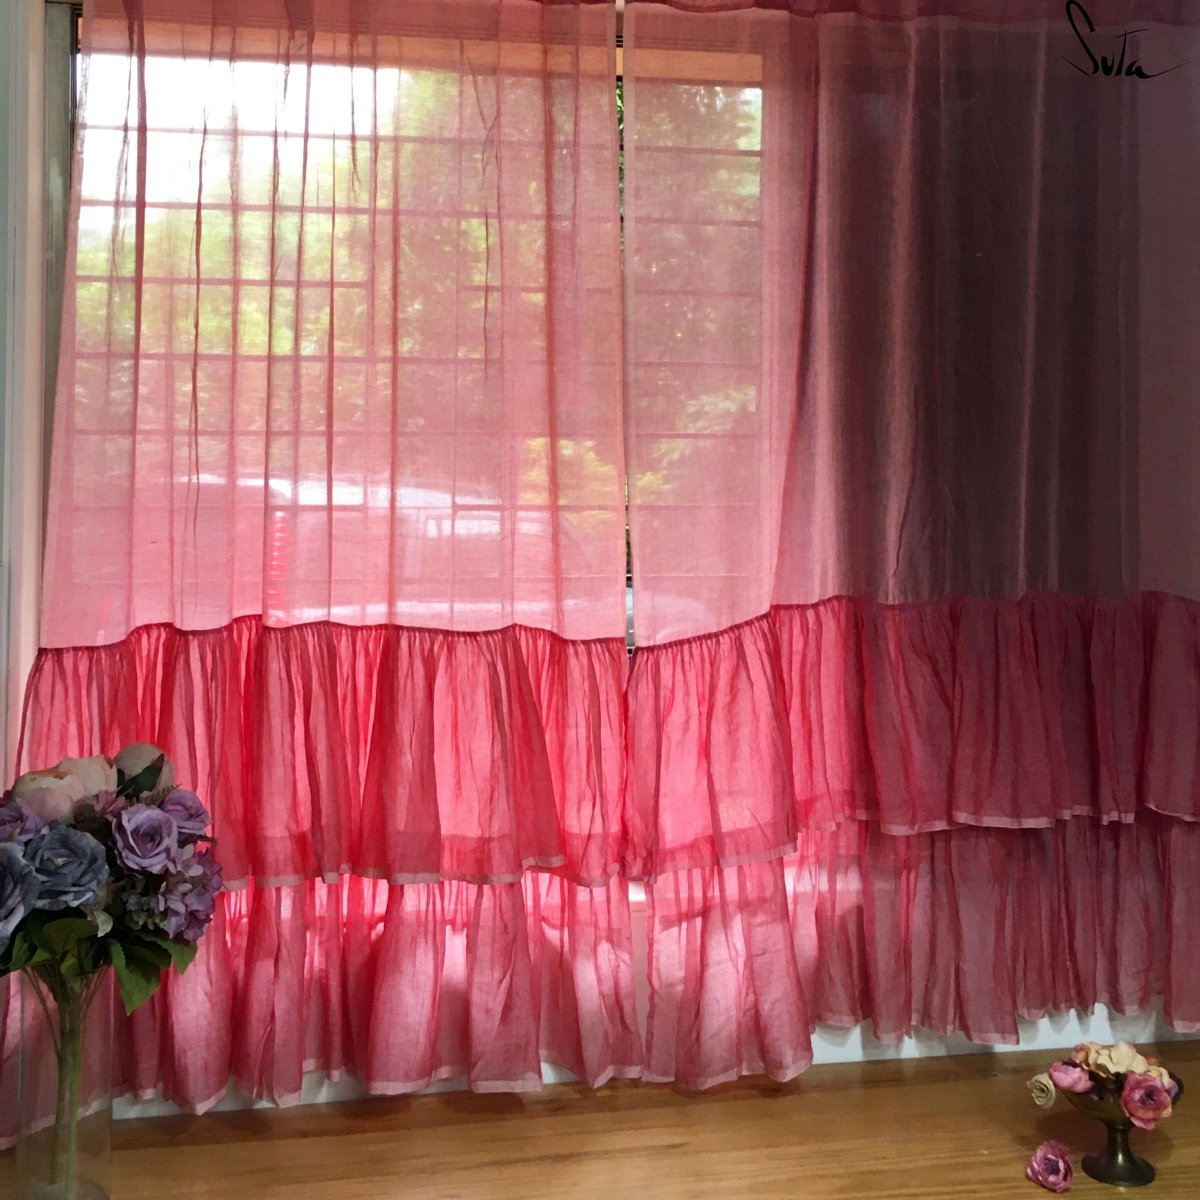 I Dream Of Flamingos ( Curtain ) - suta.in